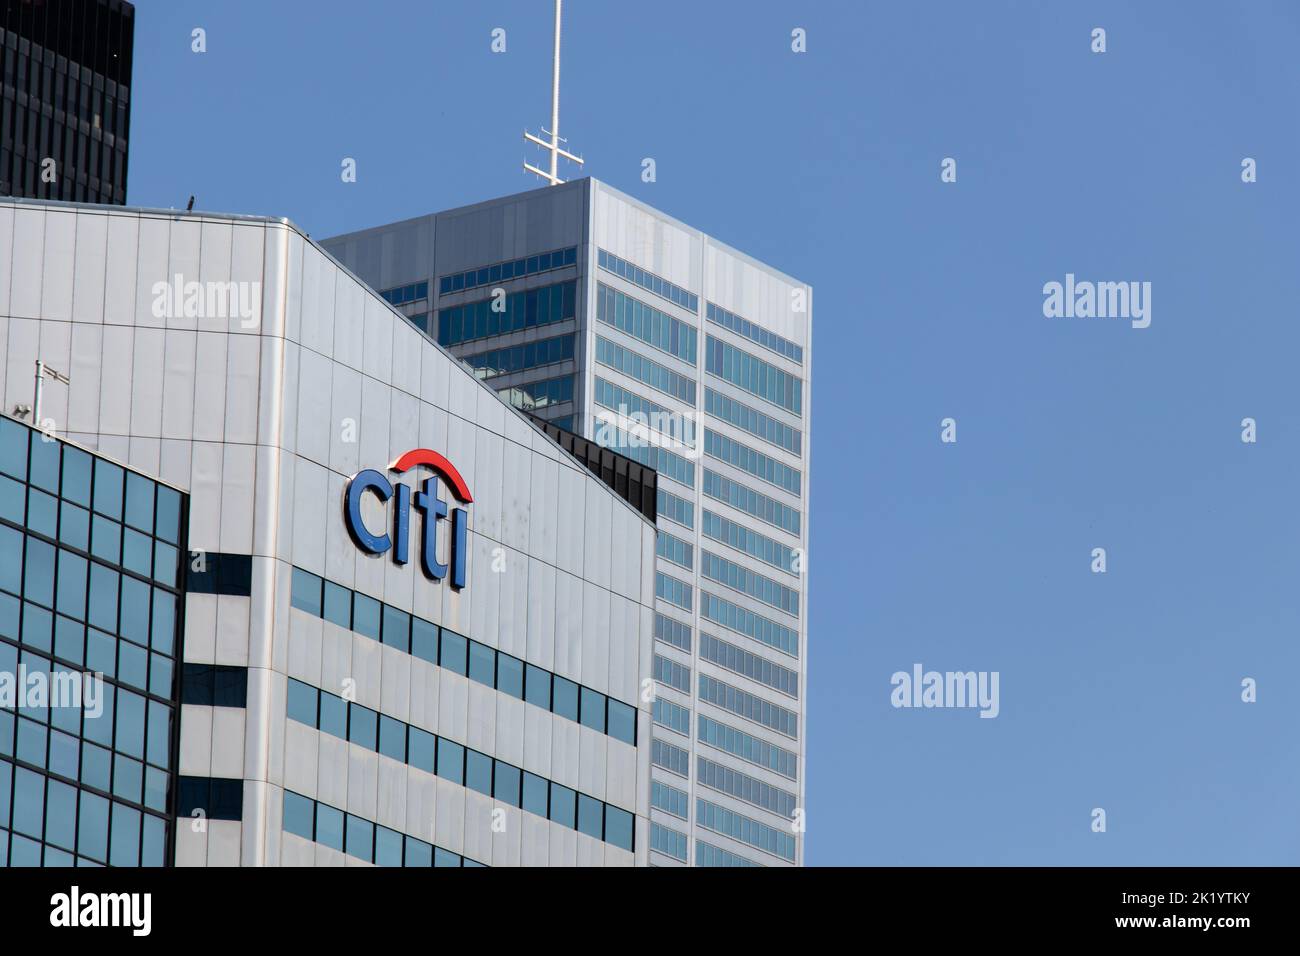 La banque Citi, logo Citigroup au sommet d'un immeuble de bureaux au centre-ville de Toronto, vu par un ciel bleu et clair. Banque D'Images